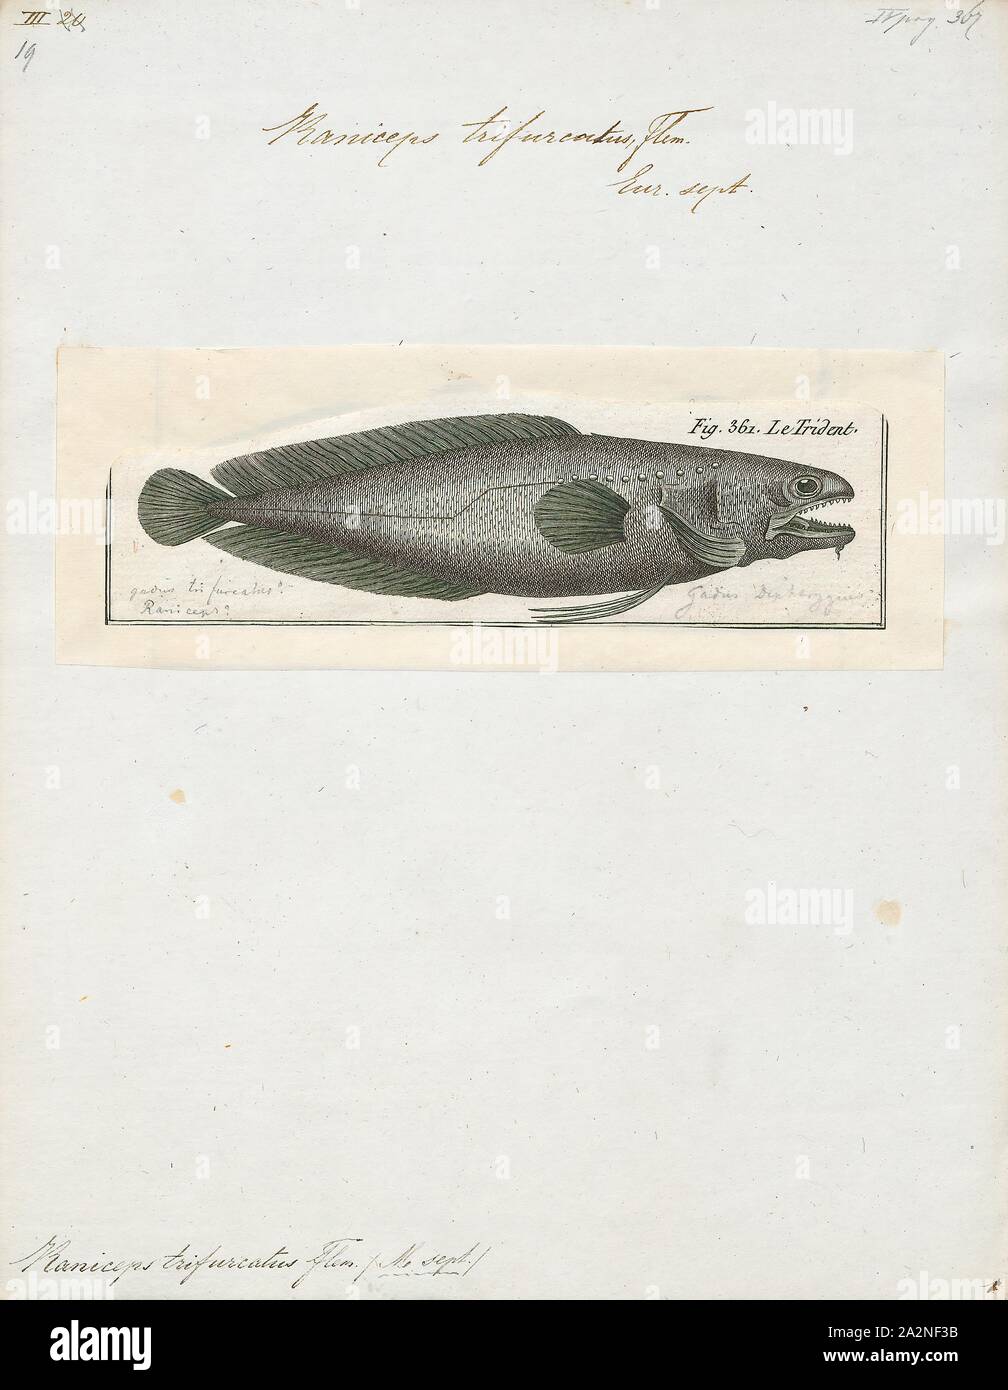 Raniceps trifurcus, Imprimir Raniceps raninus, el tadpole pescado (Raniceps raninus) es una especie de peces Gadidae nativo del noreste del Océano Atlántico alrededor de las costas de Francia, Irlanda y el Reino Unido y en el Mar del Norte. Esta especie crece hasta una longitud total de 27,5 cm (10,8 pulg.). Es de ninguna importancia para la industria pesquera comercial, aunque se pueden encontrar en el comercio de acuarios y que se muestran en acuarios públicos, 1788. Foto de stock